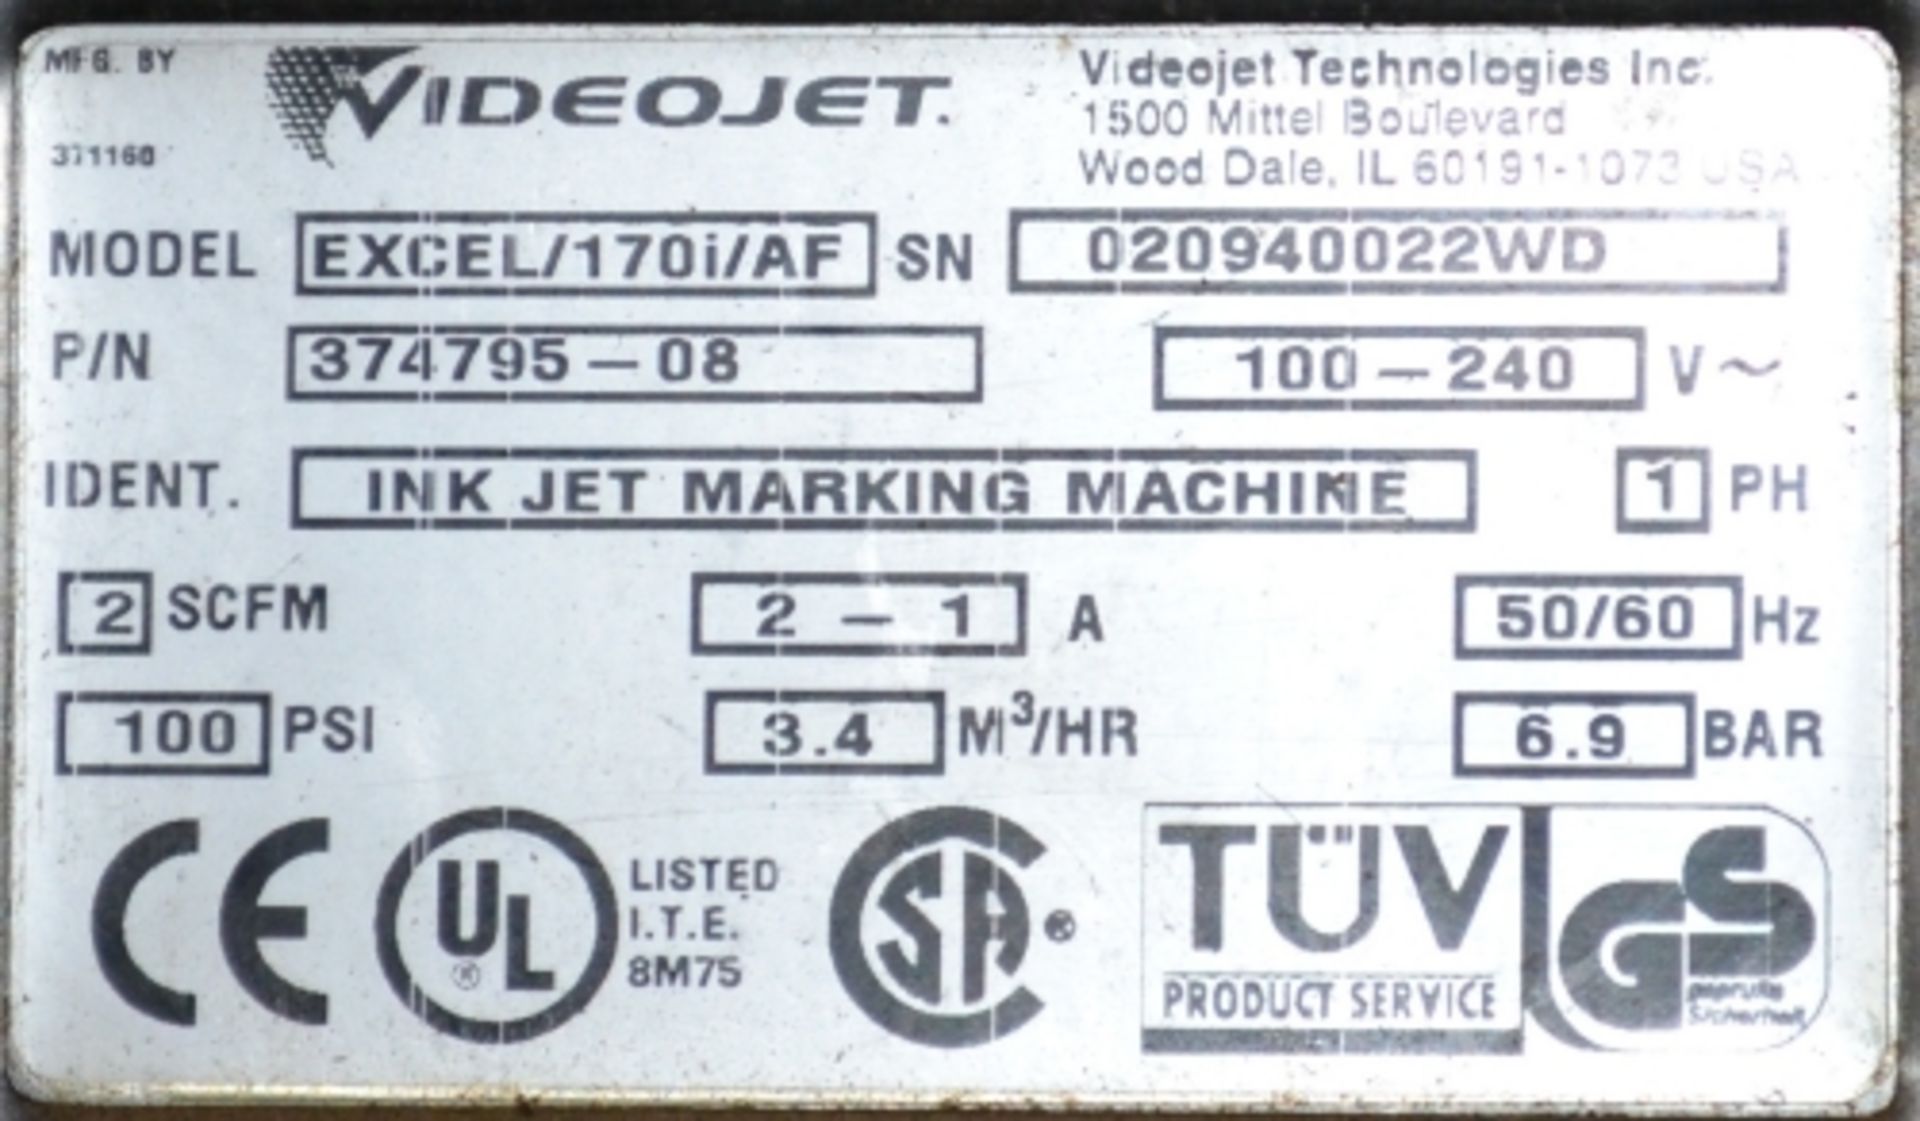 Videojet Excel model XL/170I/AF ink jet coder - Image 2 of 2